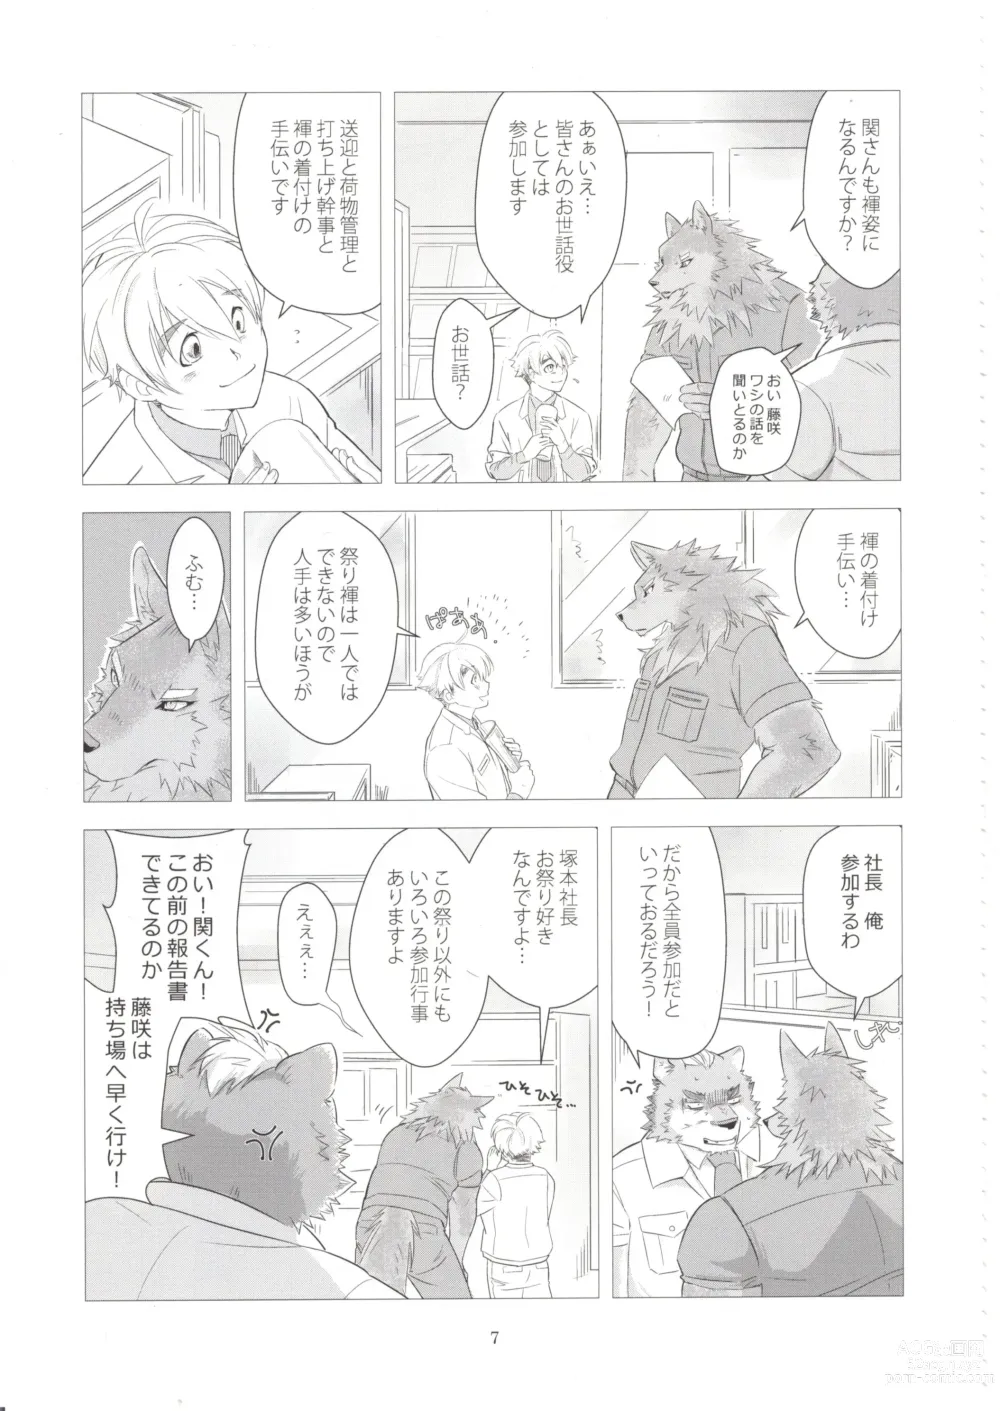 Page 6 of doujinshi Otoko Matsuri vol. 5